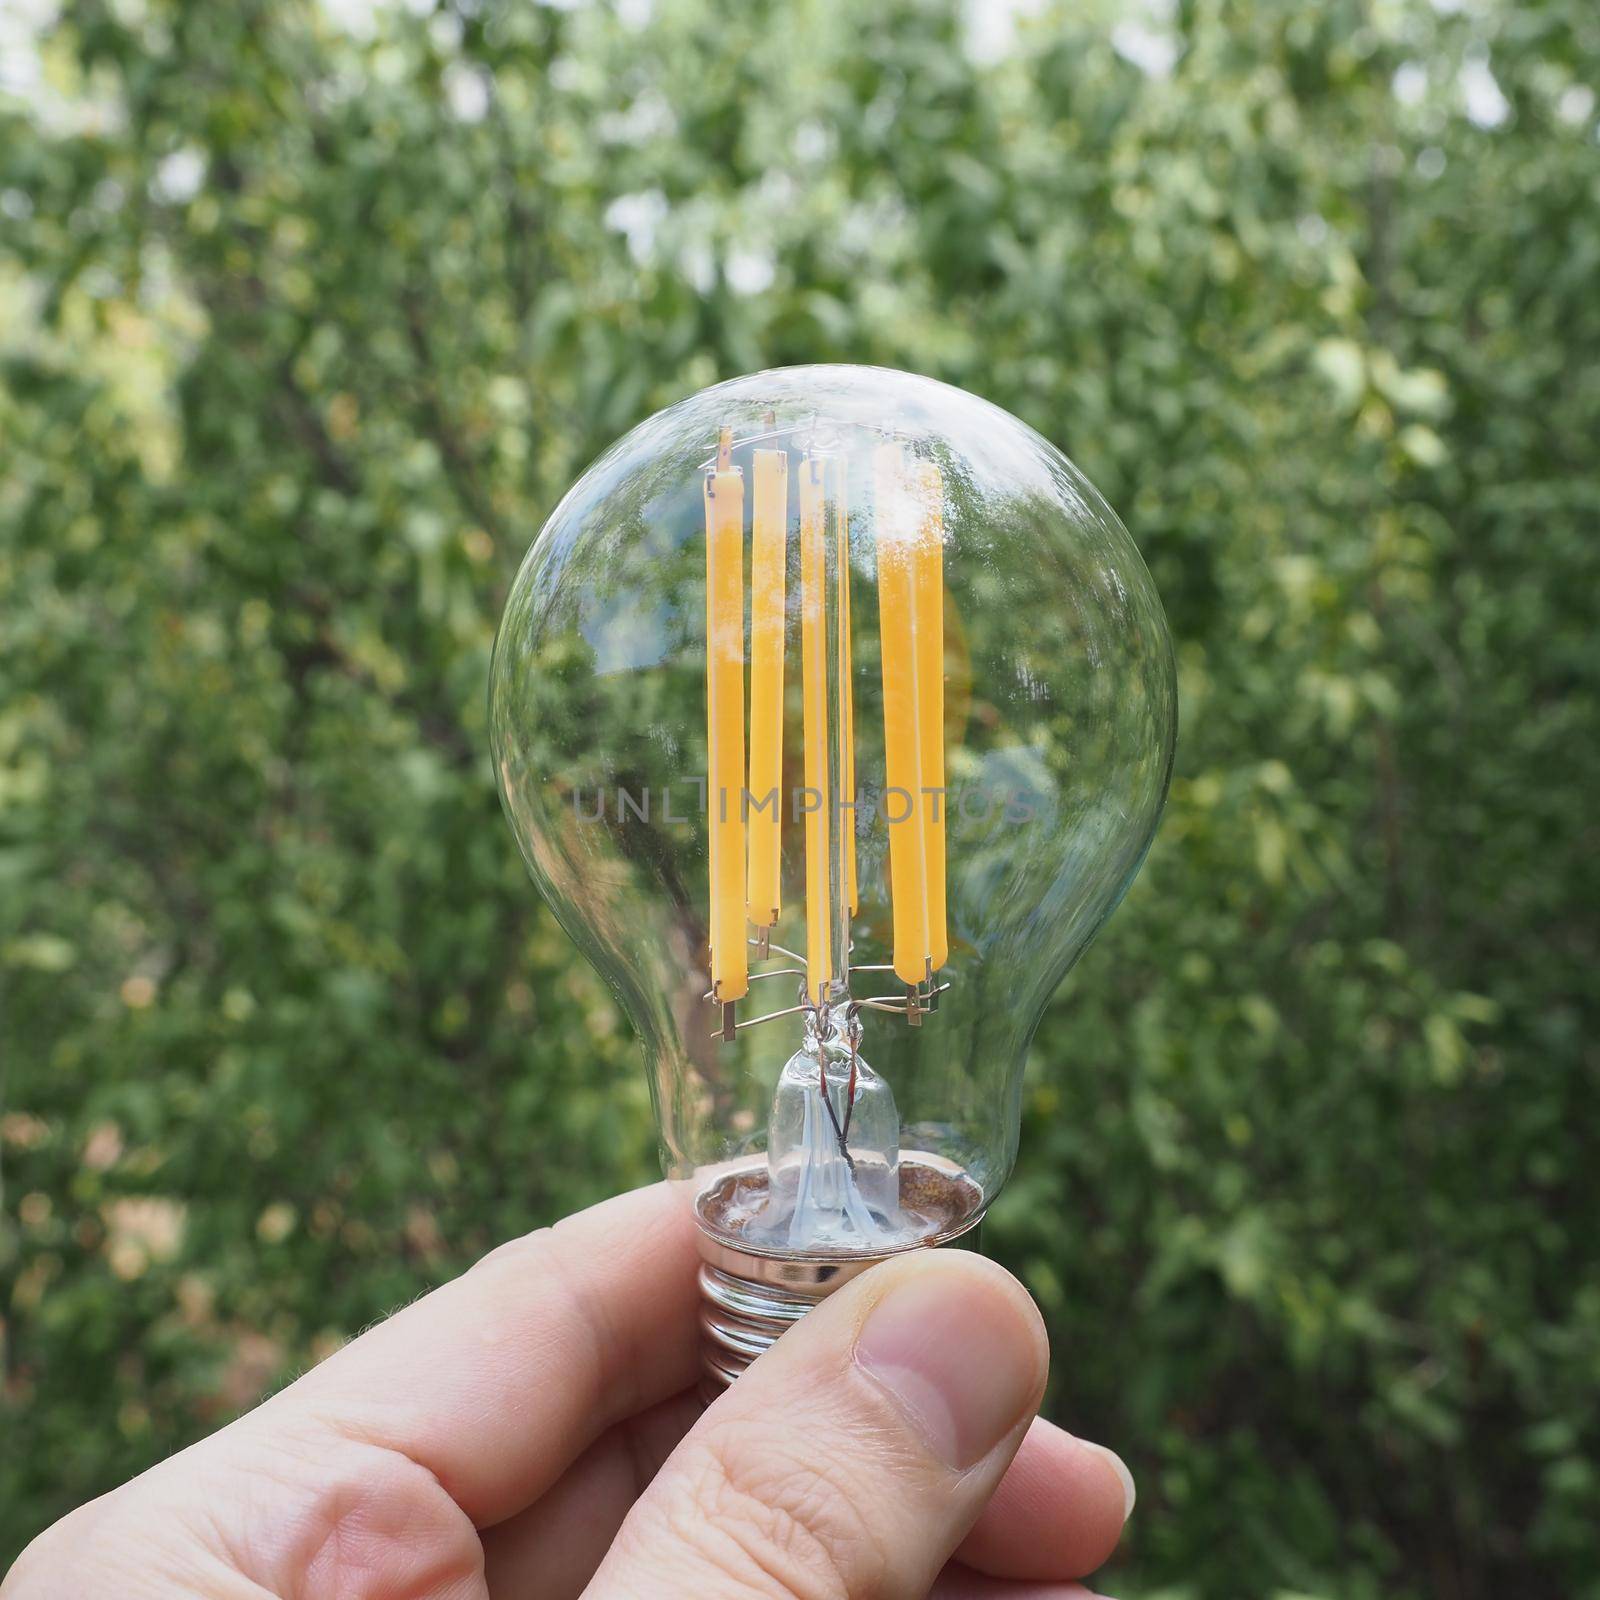 modern energy saving led bulb against green leaves